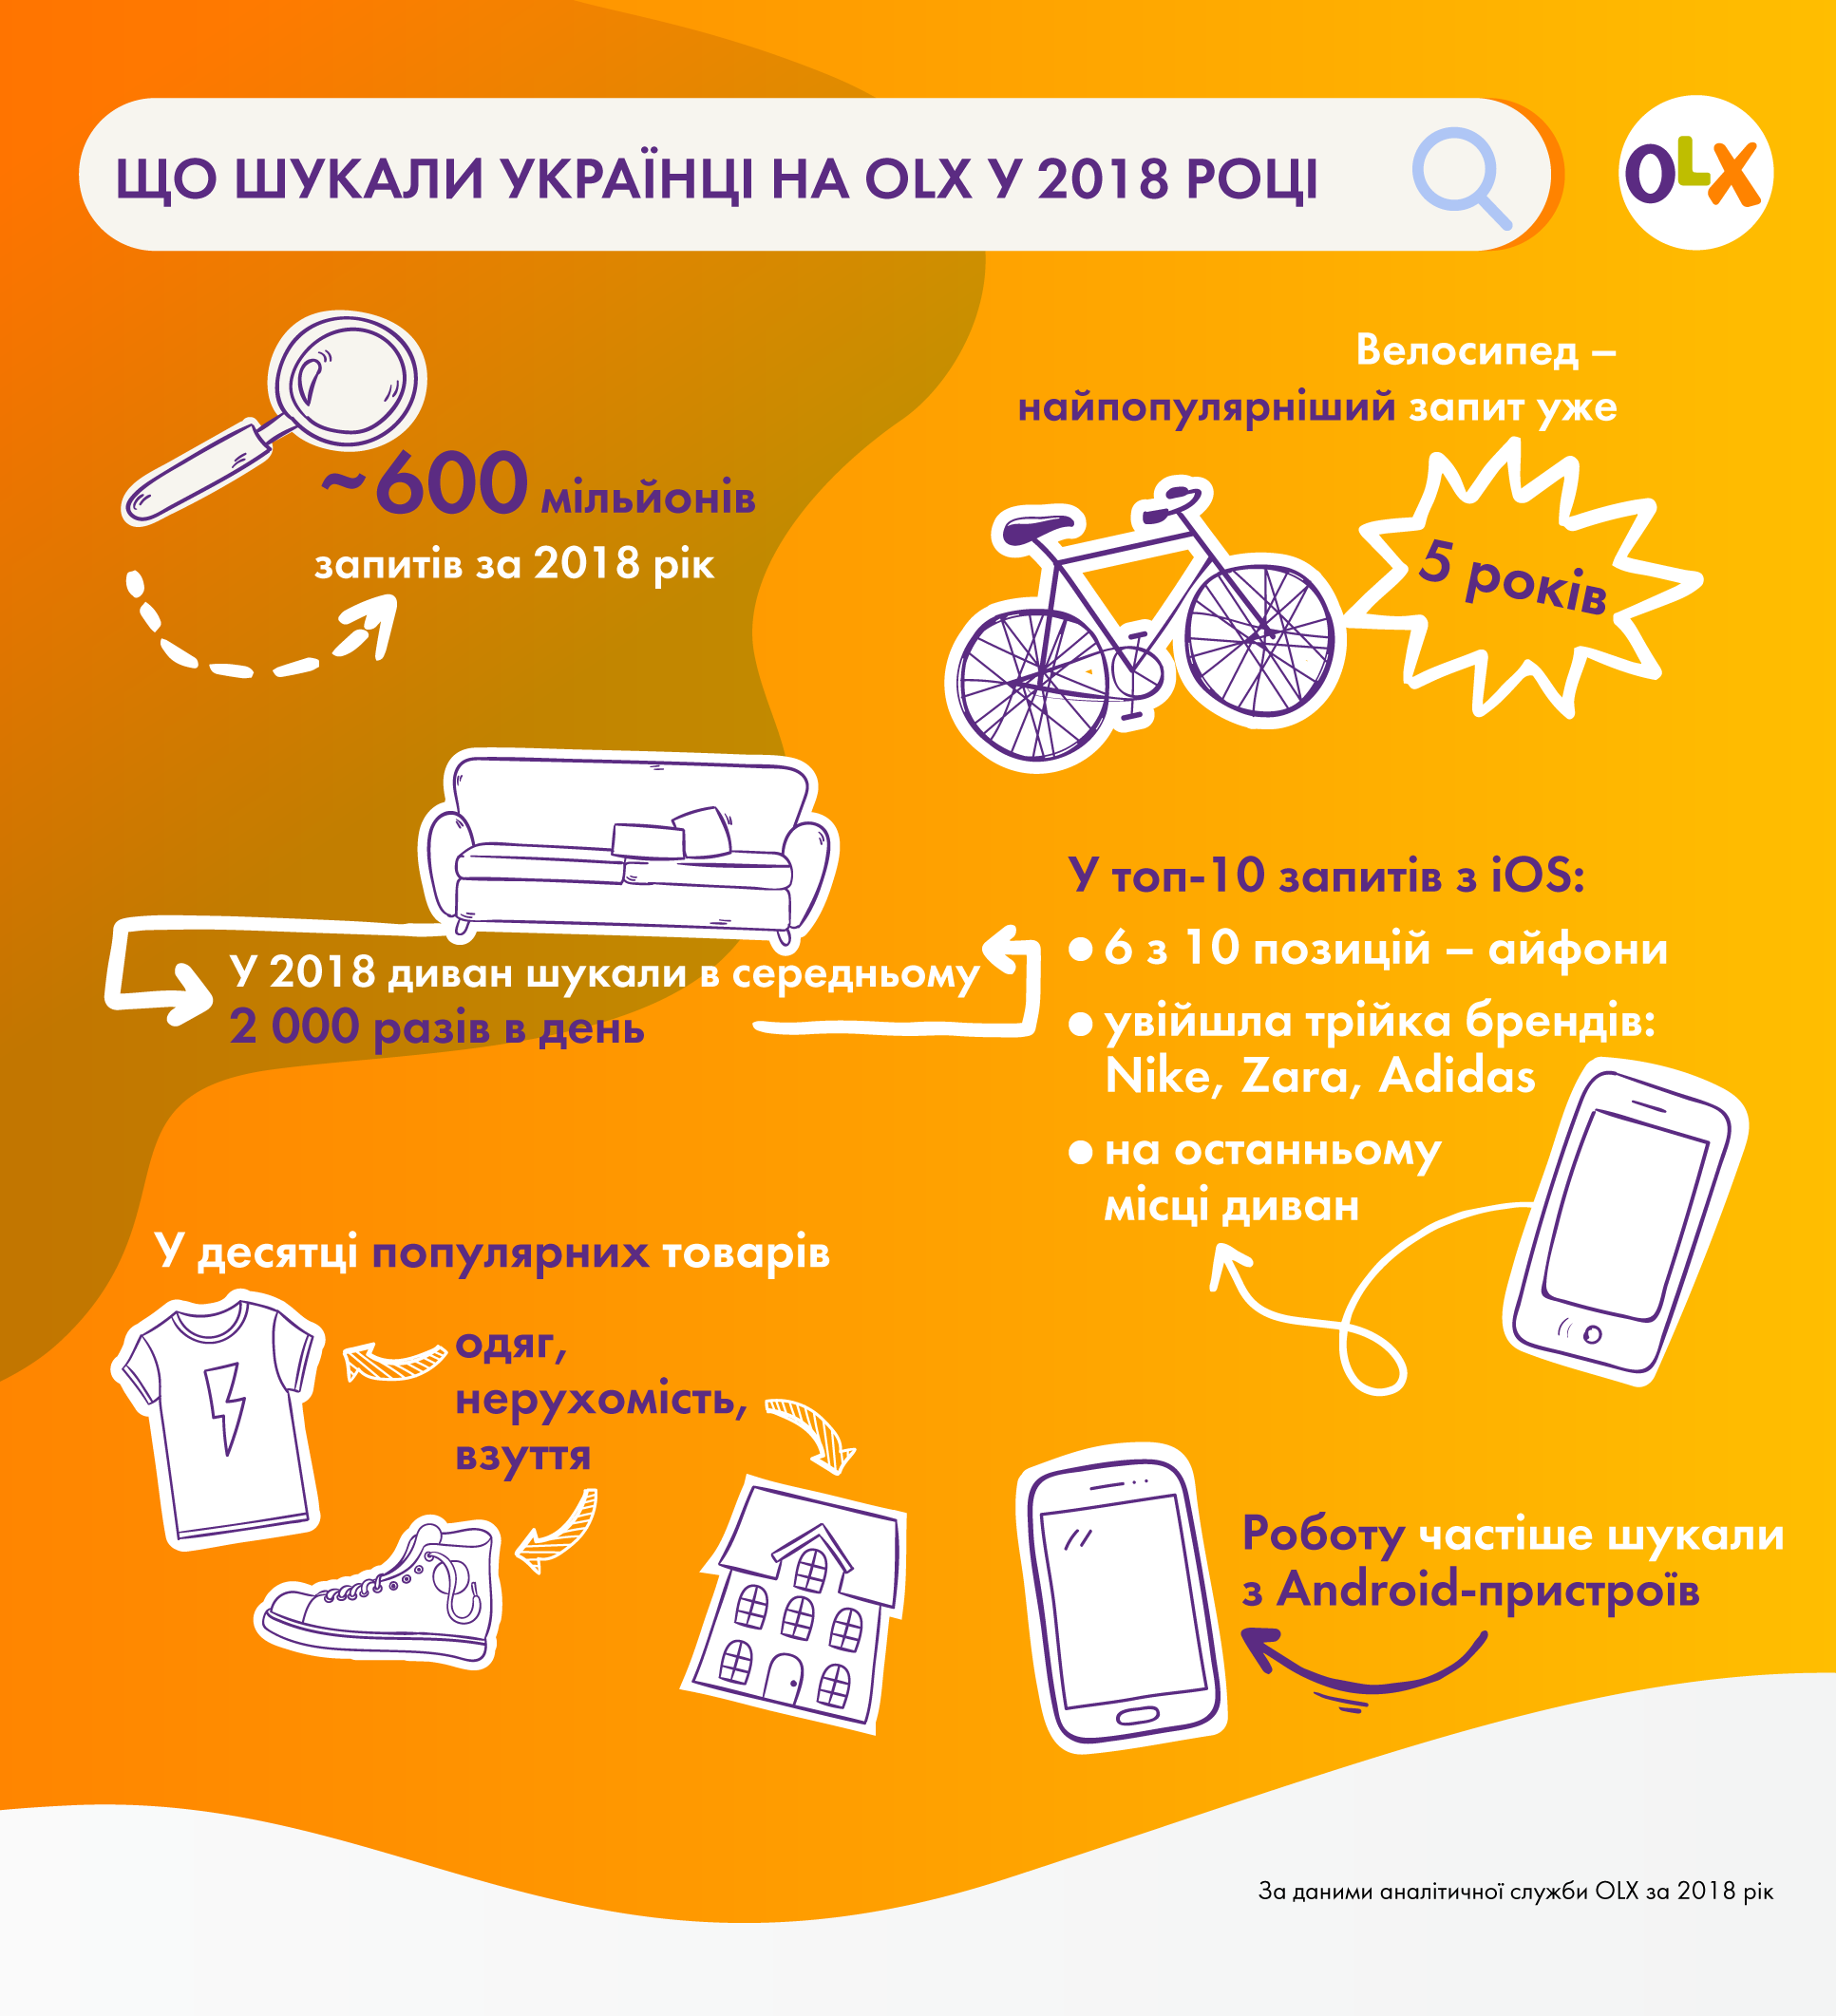 Диван, квартира, велосипед: найпопулярніші запити українців на OLX в 2018 році